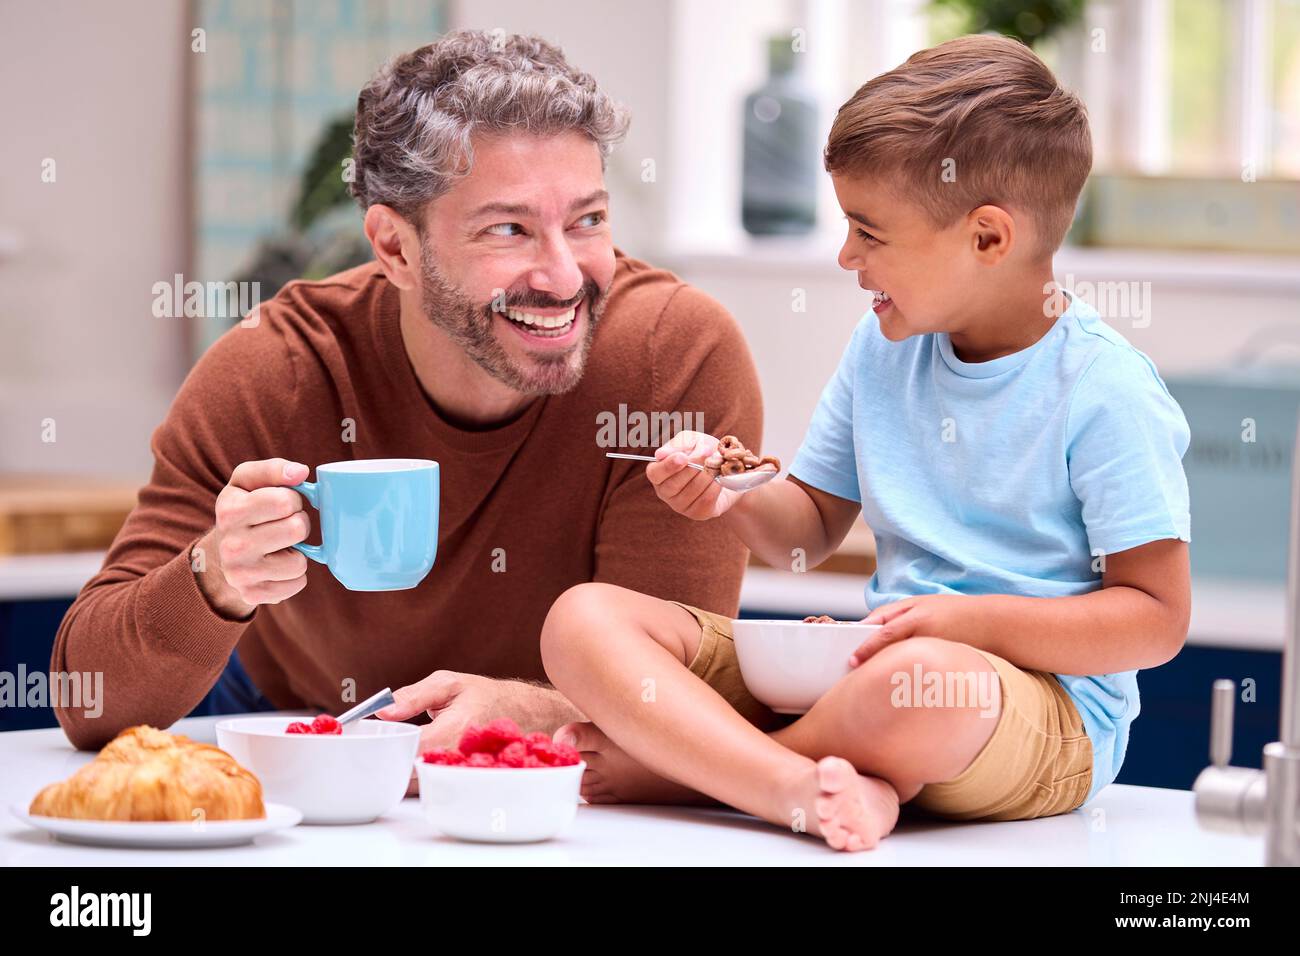 Familie Mit Vater In Der Küche, Sohn Sitzt An Der Theke Und Frühstückt Zusammen Stockfoto